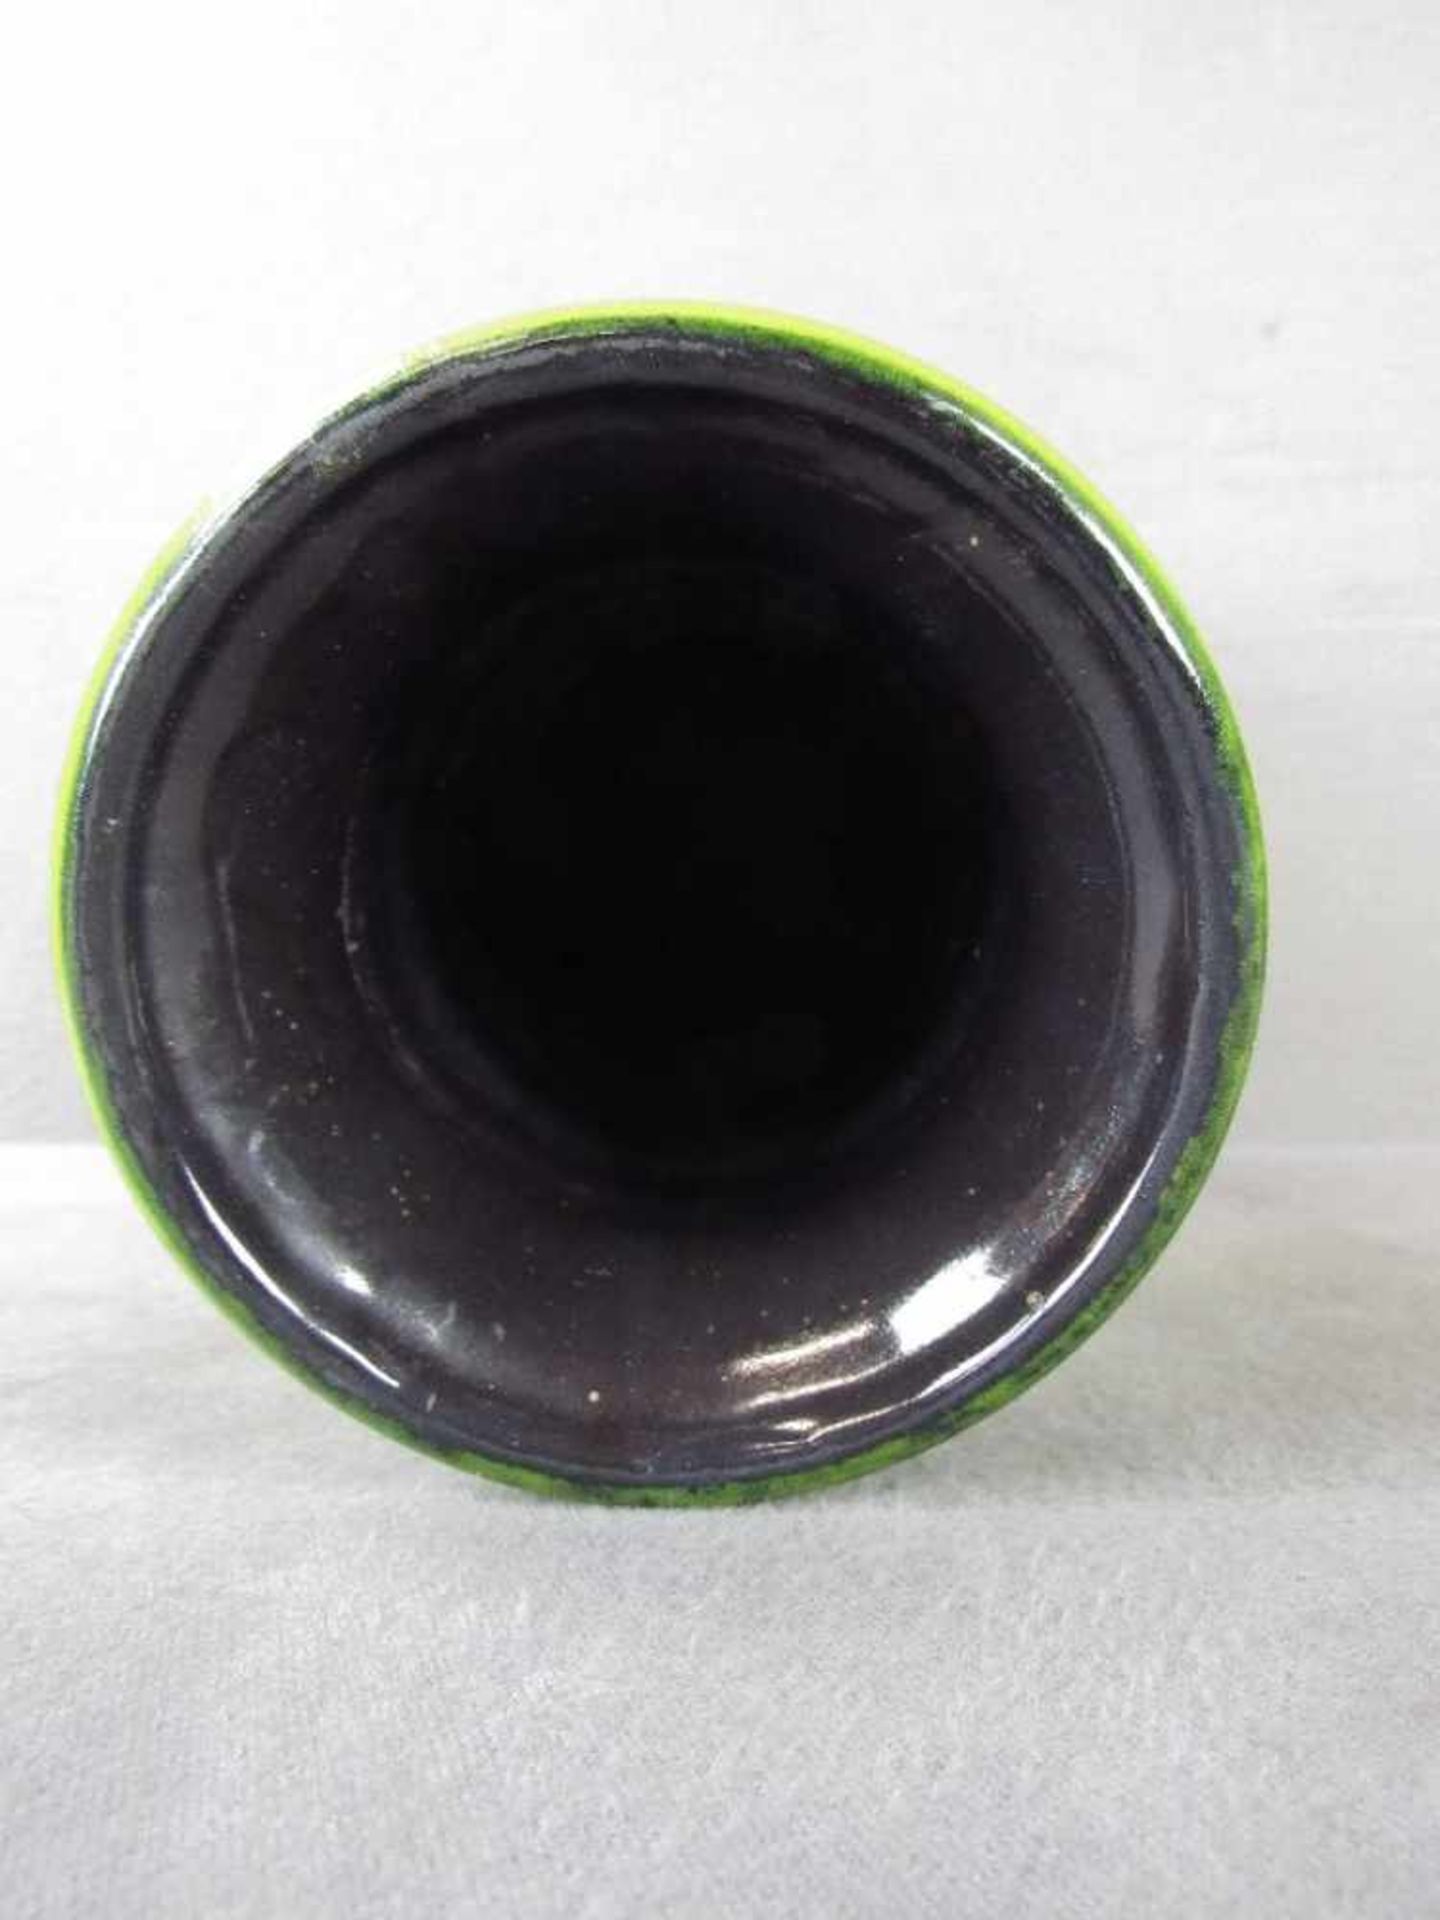 Designer Keramikvase gelb grün lasiert 40cm hoch gemarkt - Image 3 of 4